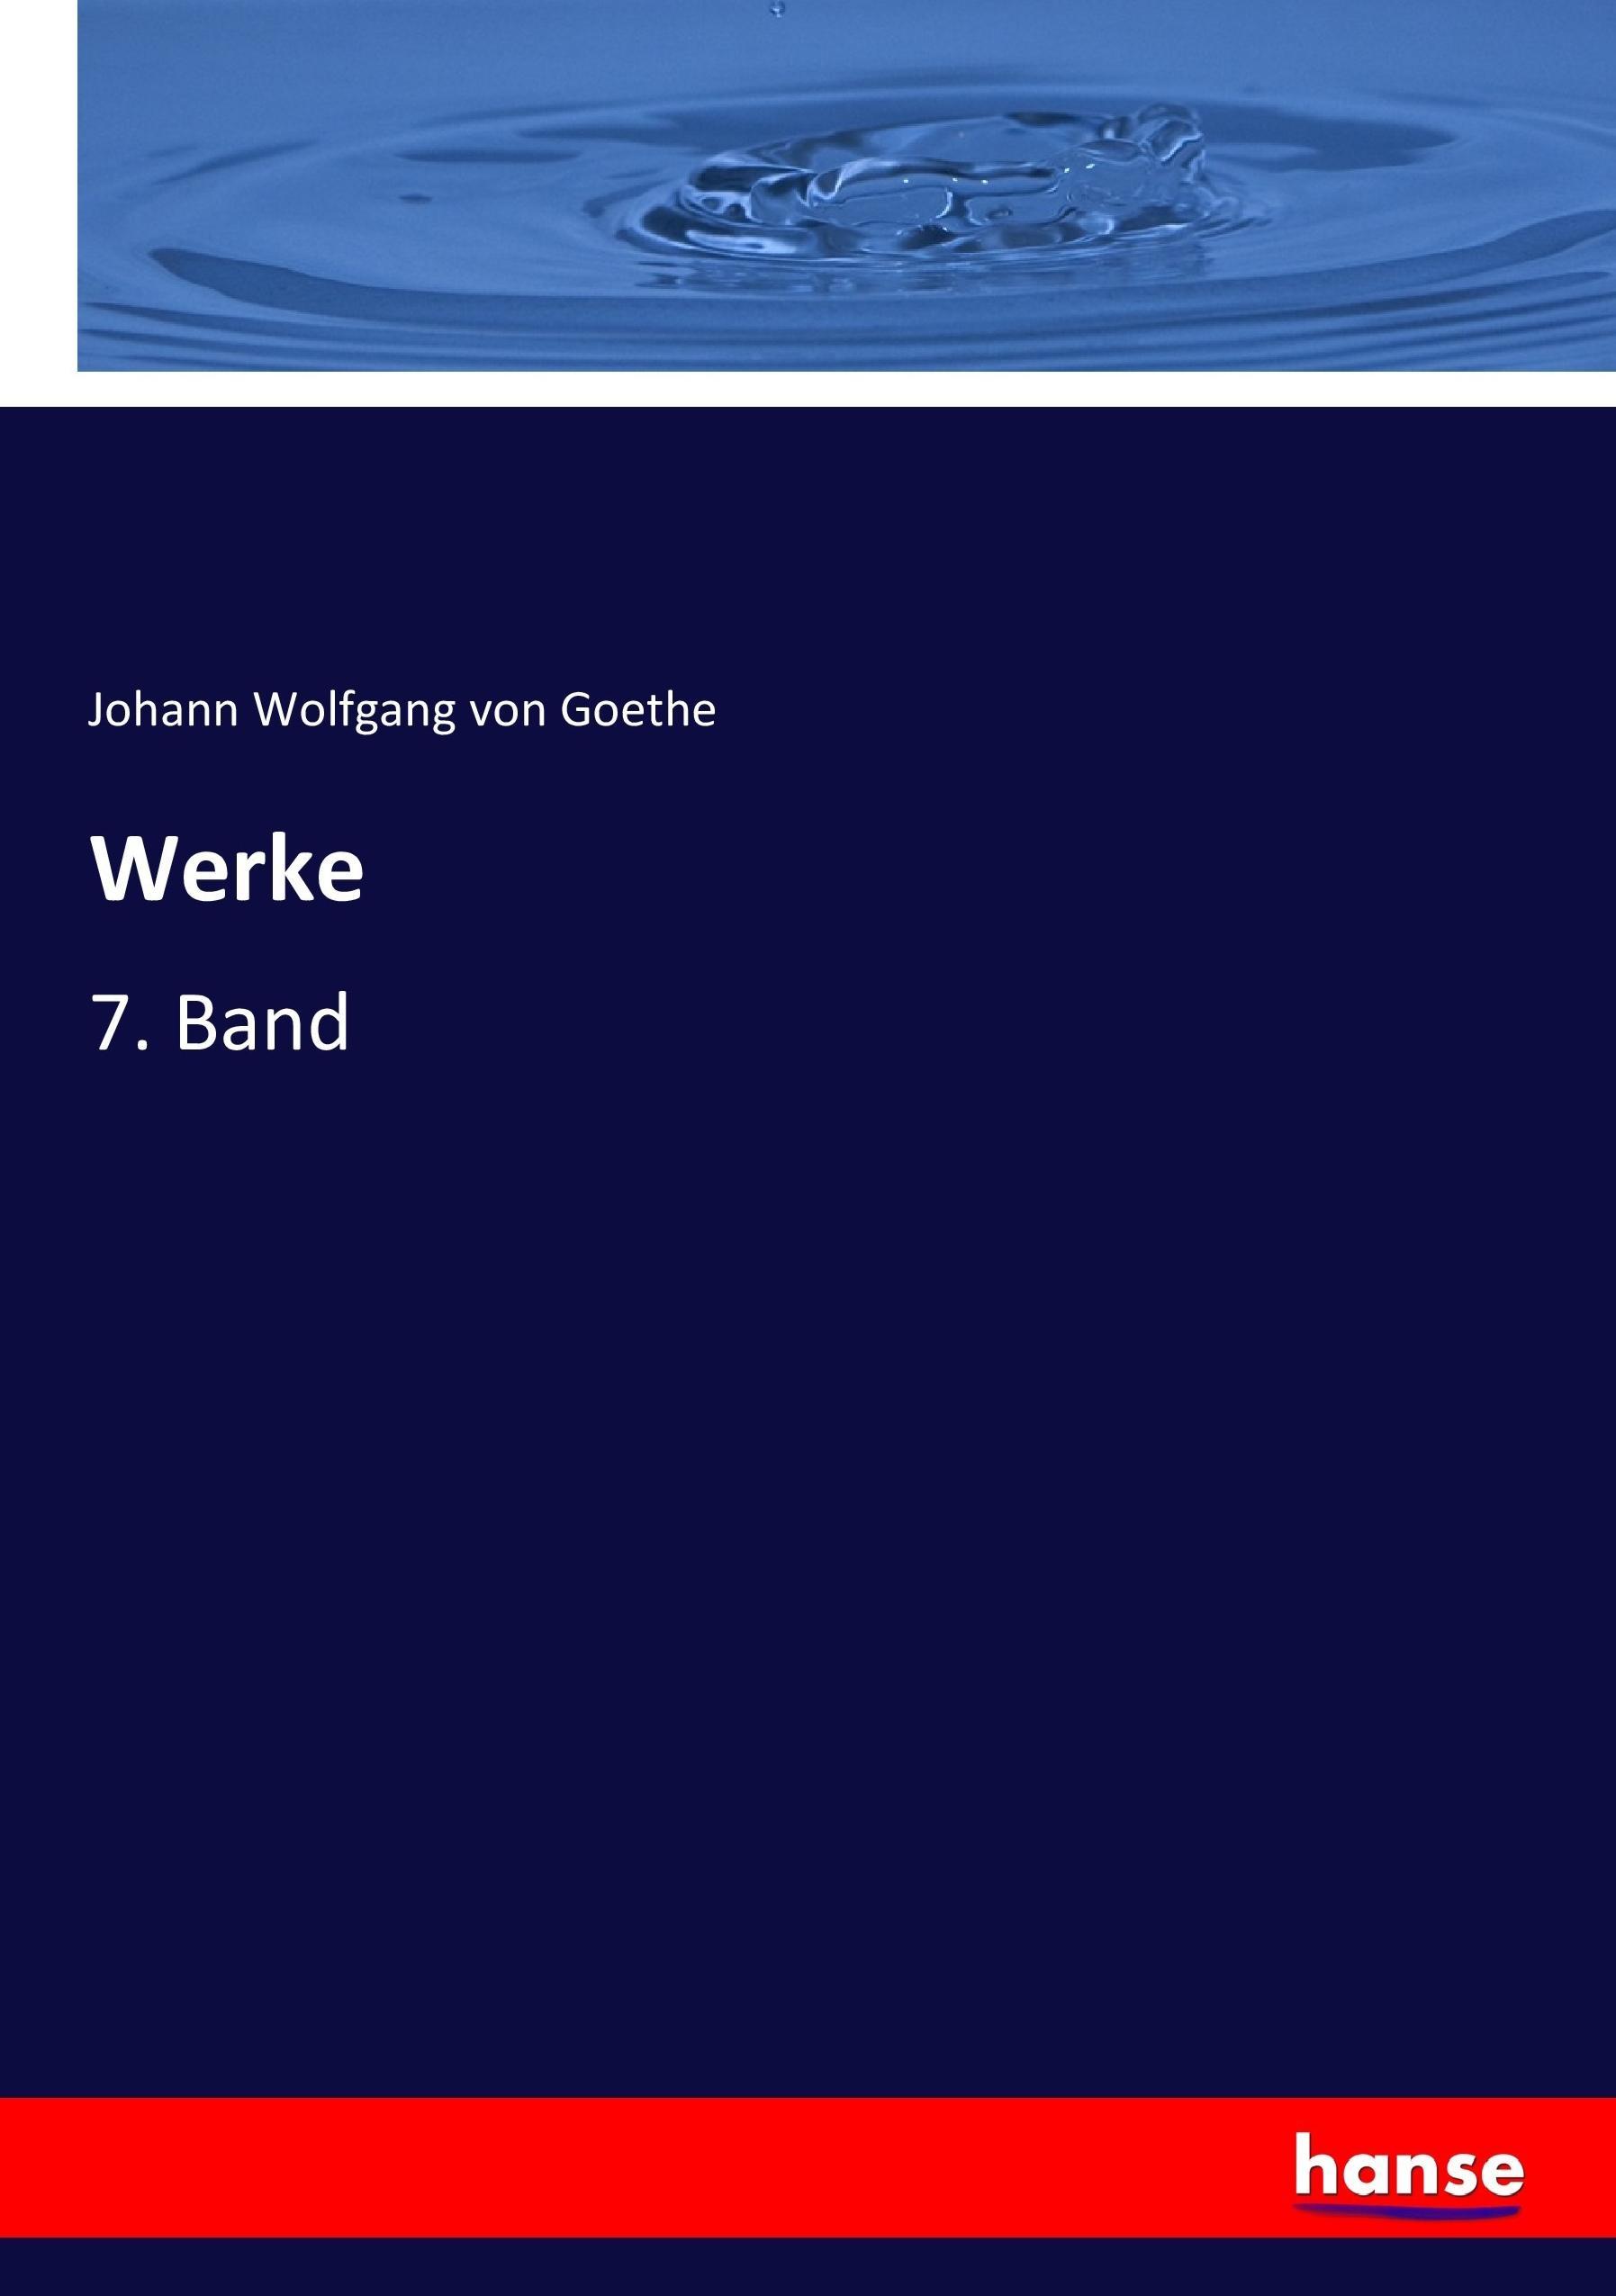 Werke | 7. Band | Johann Wolfgang von Goethe | Taschenbuch | Paperback | 348 S. | Deutsch | 2017 | hansebooks | EAN 9783744703826 - Goethe, Johann Wolfgang von